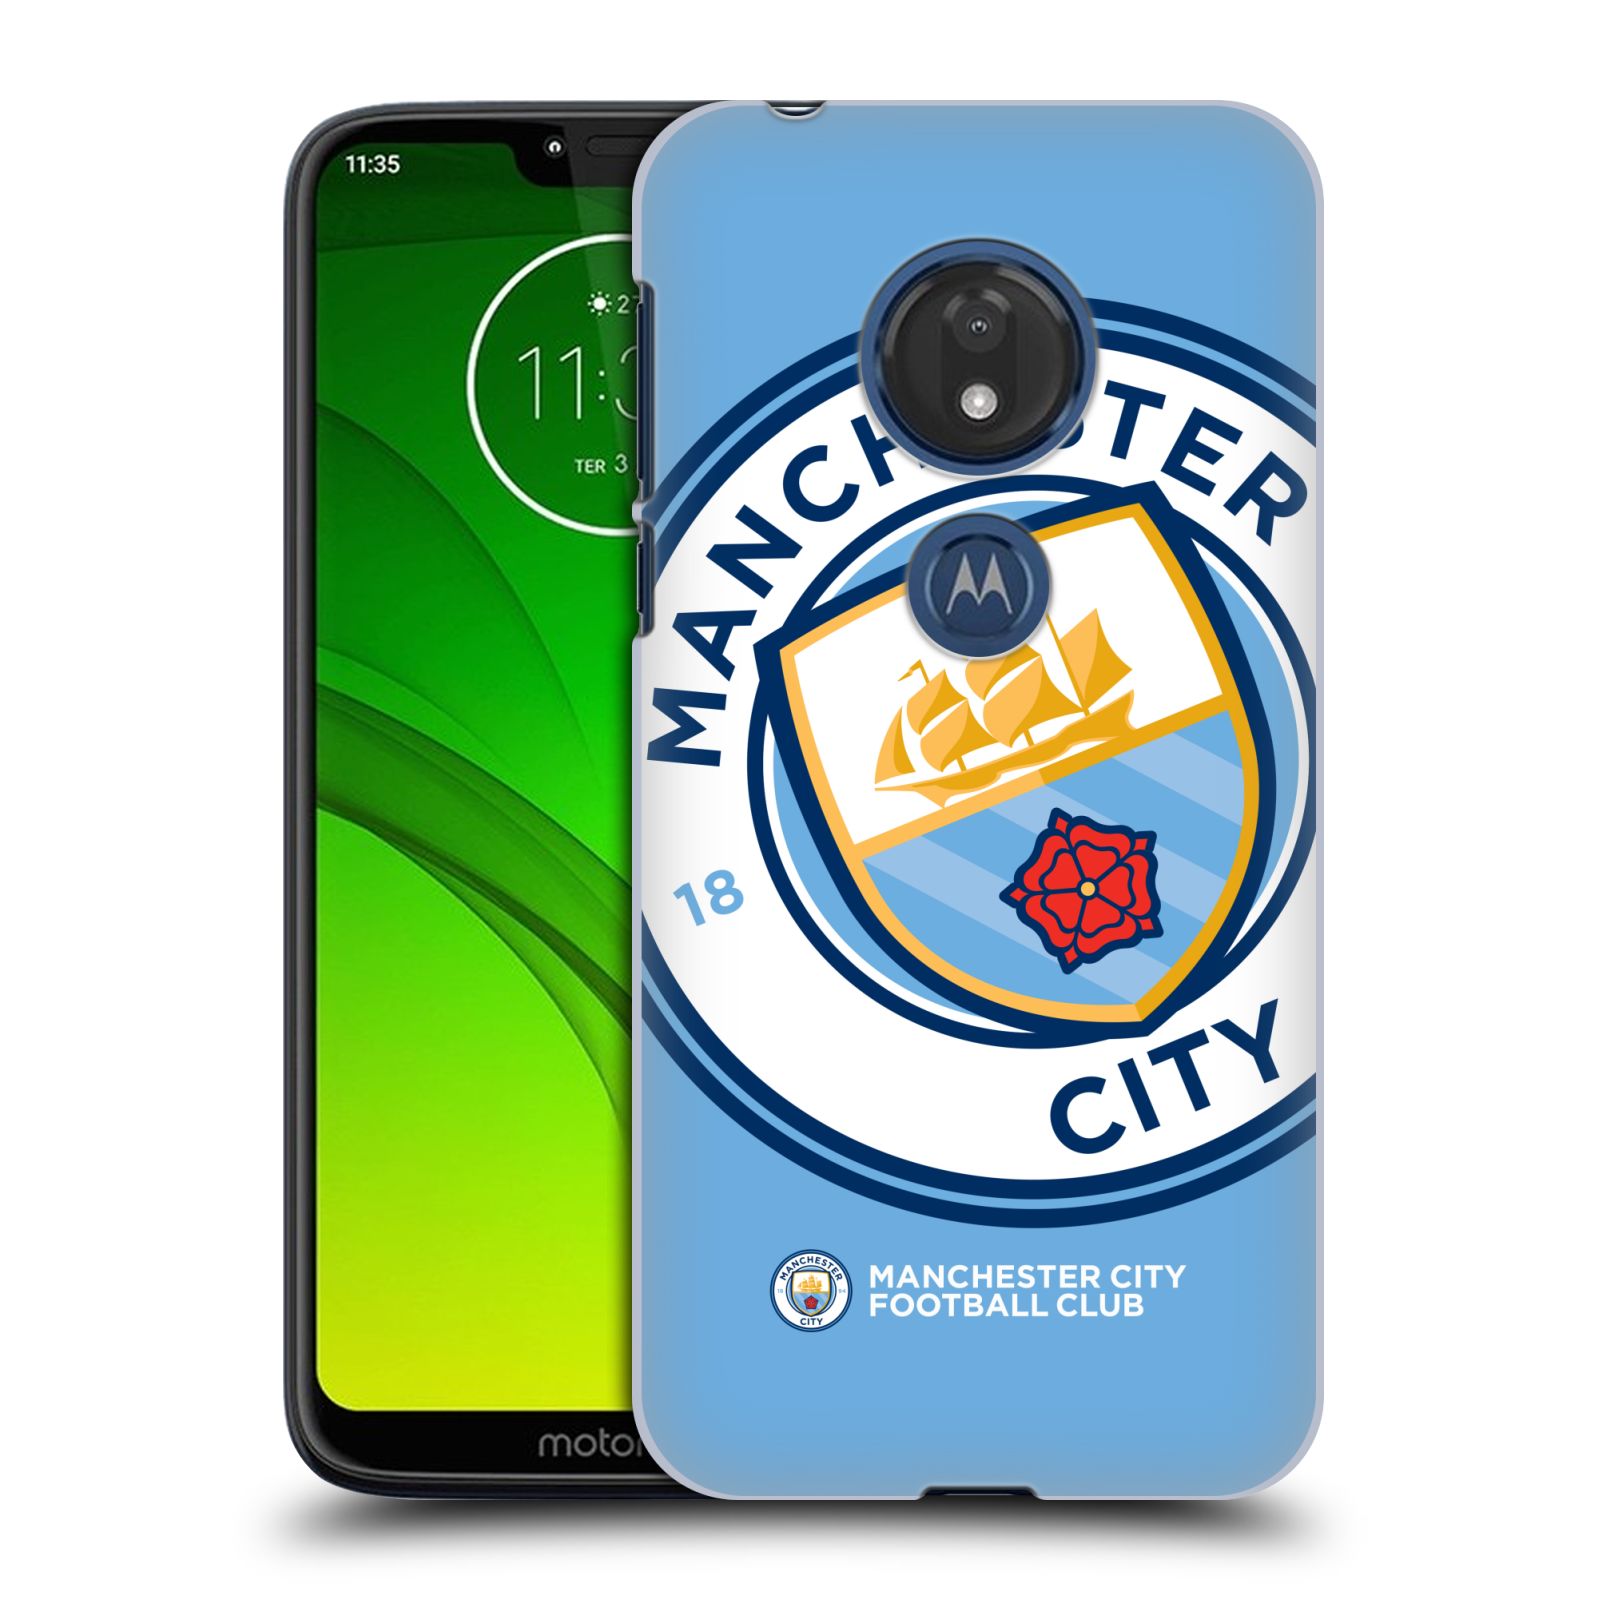 Pouzdro na mobil Motorola Moto G7 Play Fotbalový klub Manchester City modrý velký přesahující znak